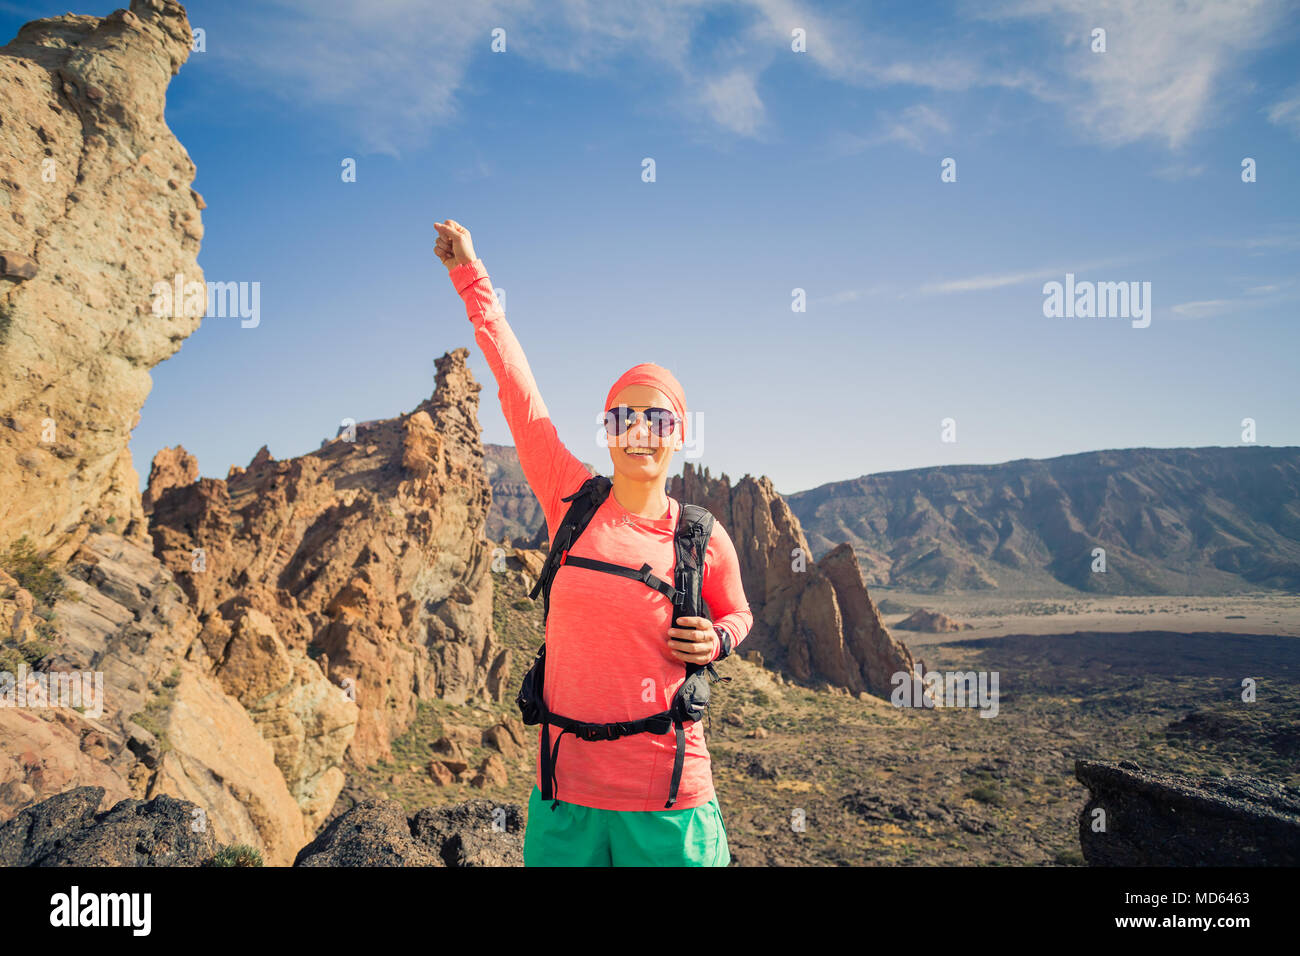 Wandern oder Klettern Erfolg mit erhobenen Armen Konzept. Läuferin oder Wanderer feiern auf Mountain Top in inspirierende Landschaft auf Rocky Trail Fuß Stockfoto